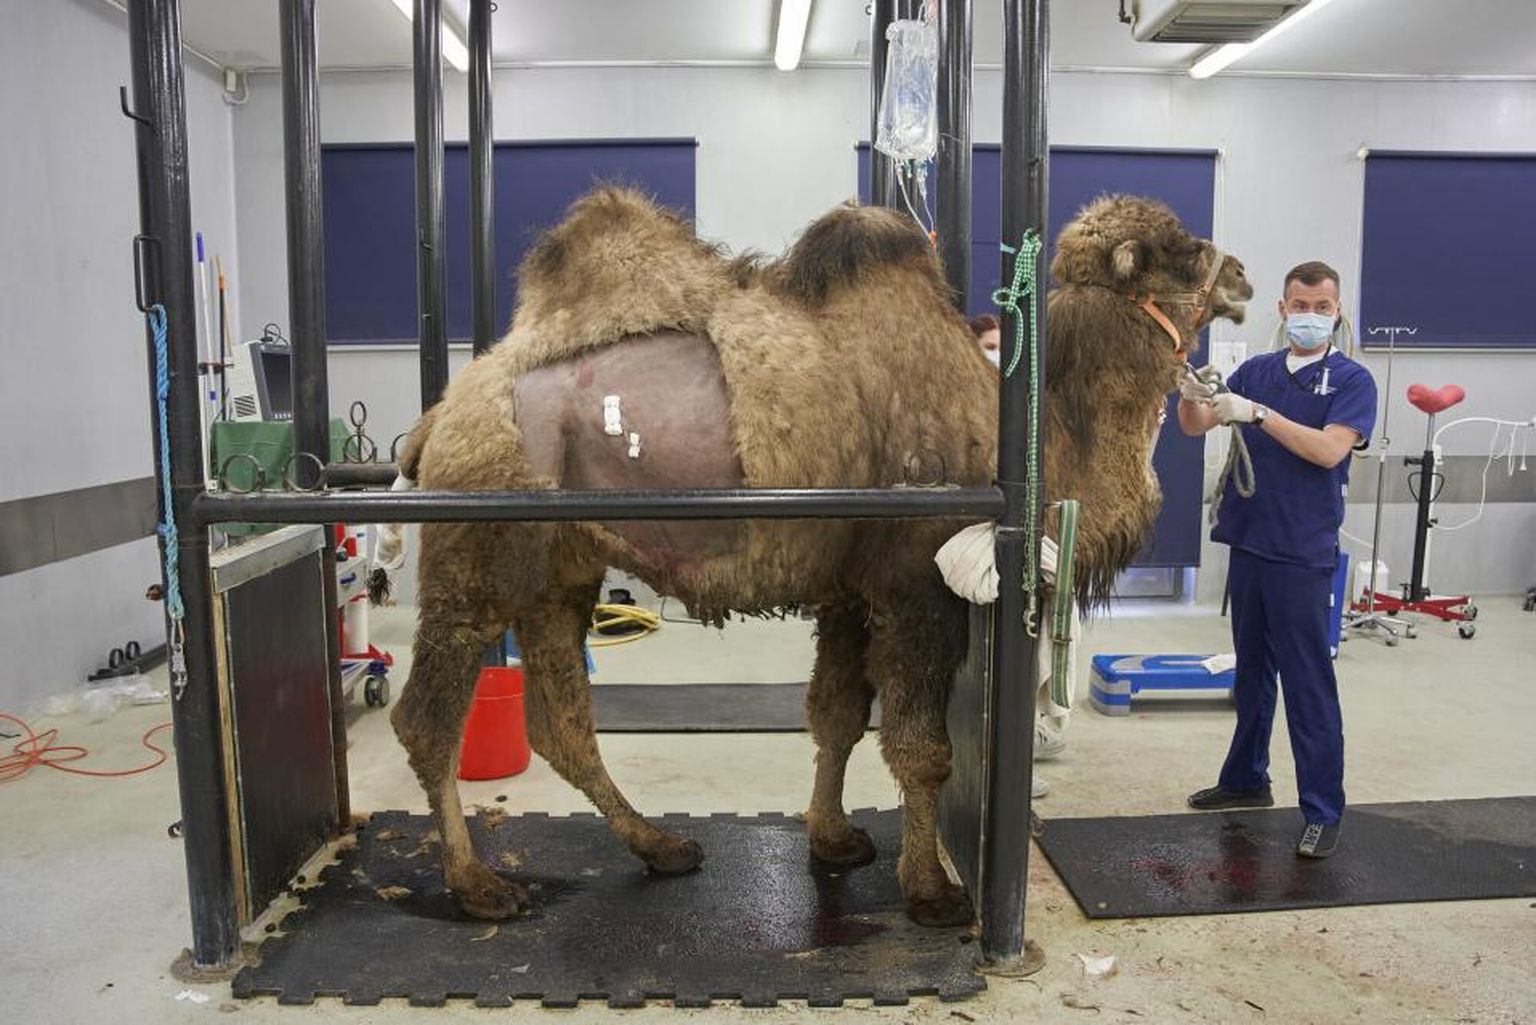 Maaülikooli loomakliinikus operatsioonil käinud kaamel käitus nii lõikuse ajal kui ka pärast seda eeskujulikult. Pildil valmistub kliiniku ülemarst Aleksandr Semjonov kaamelit operatsioonitoast ära viima.